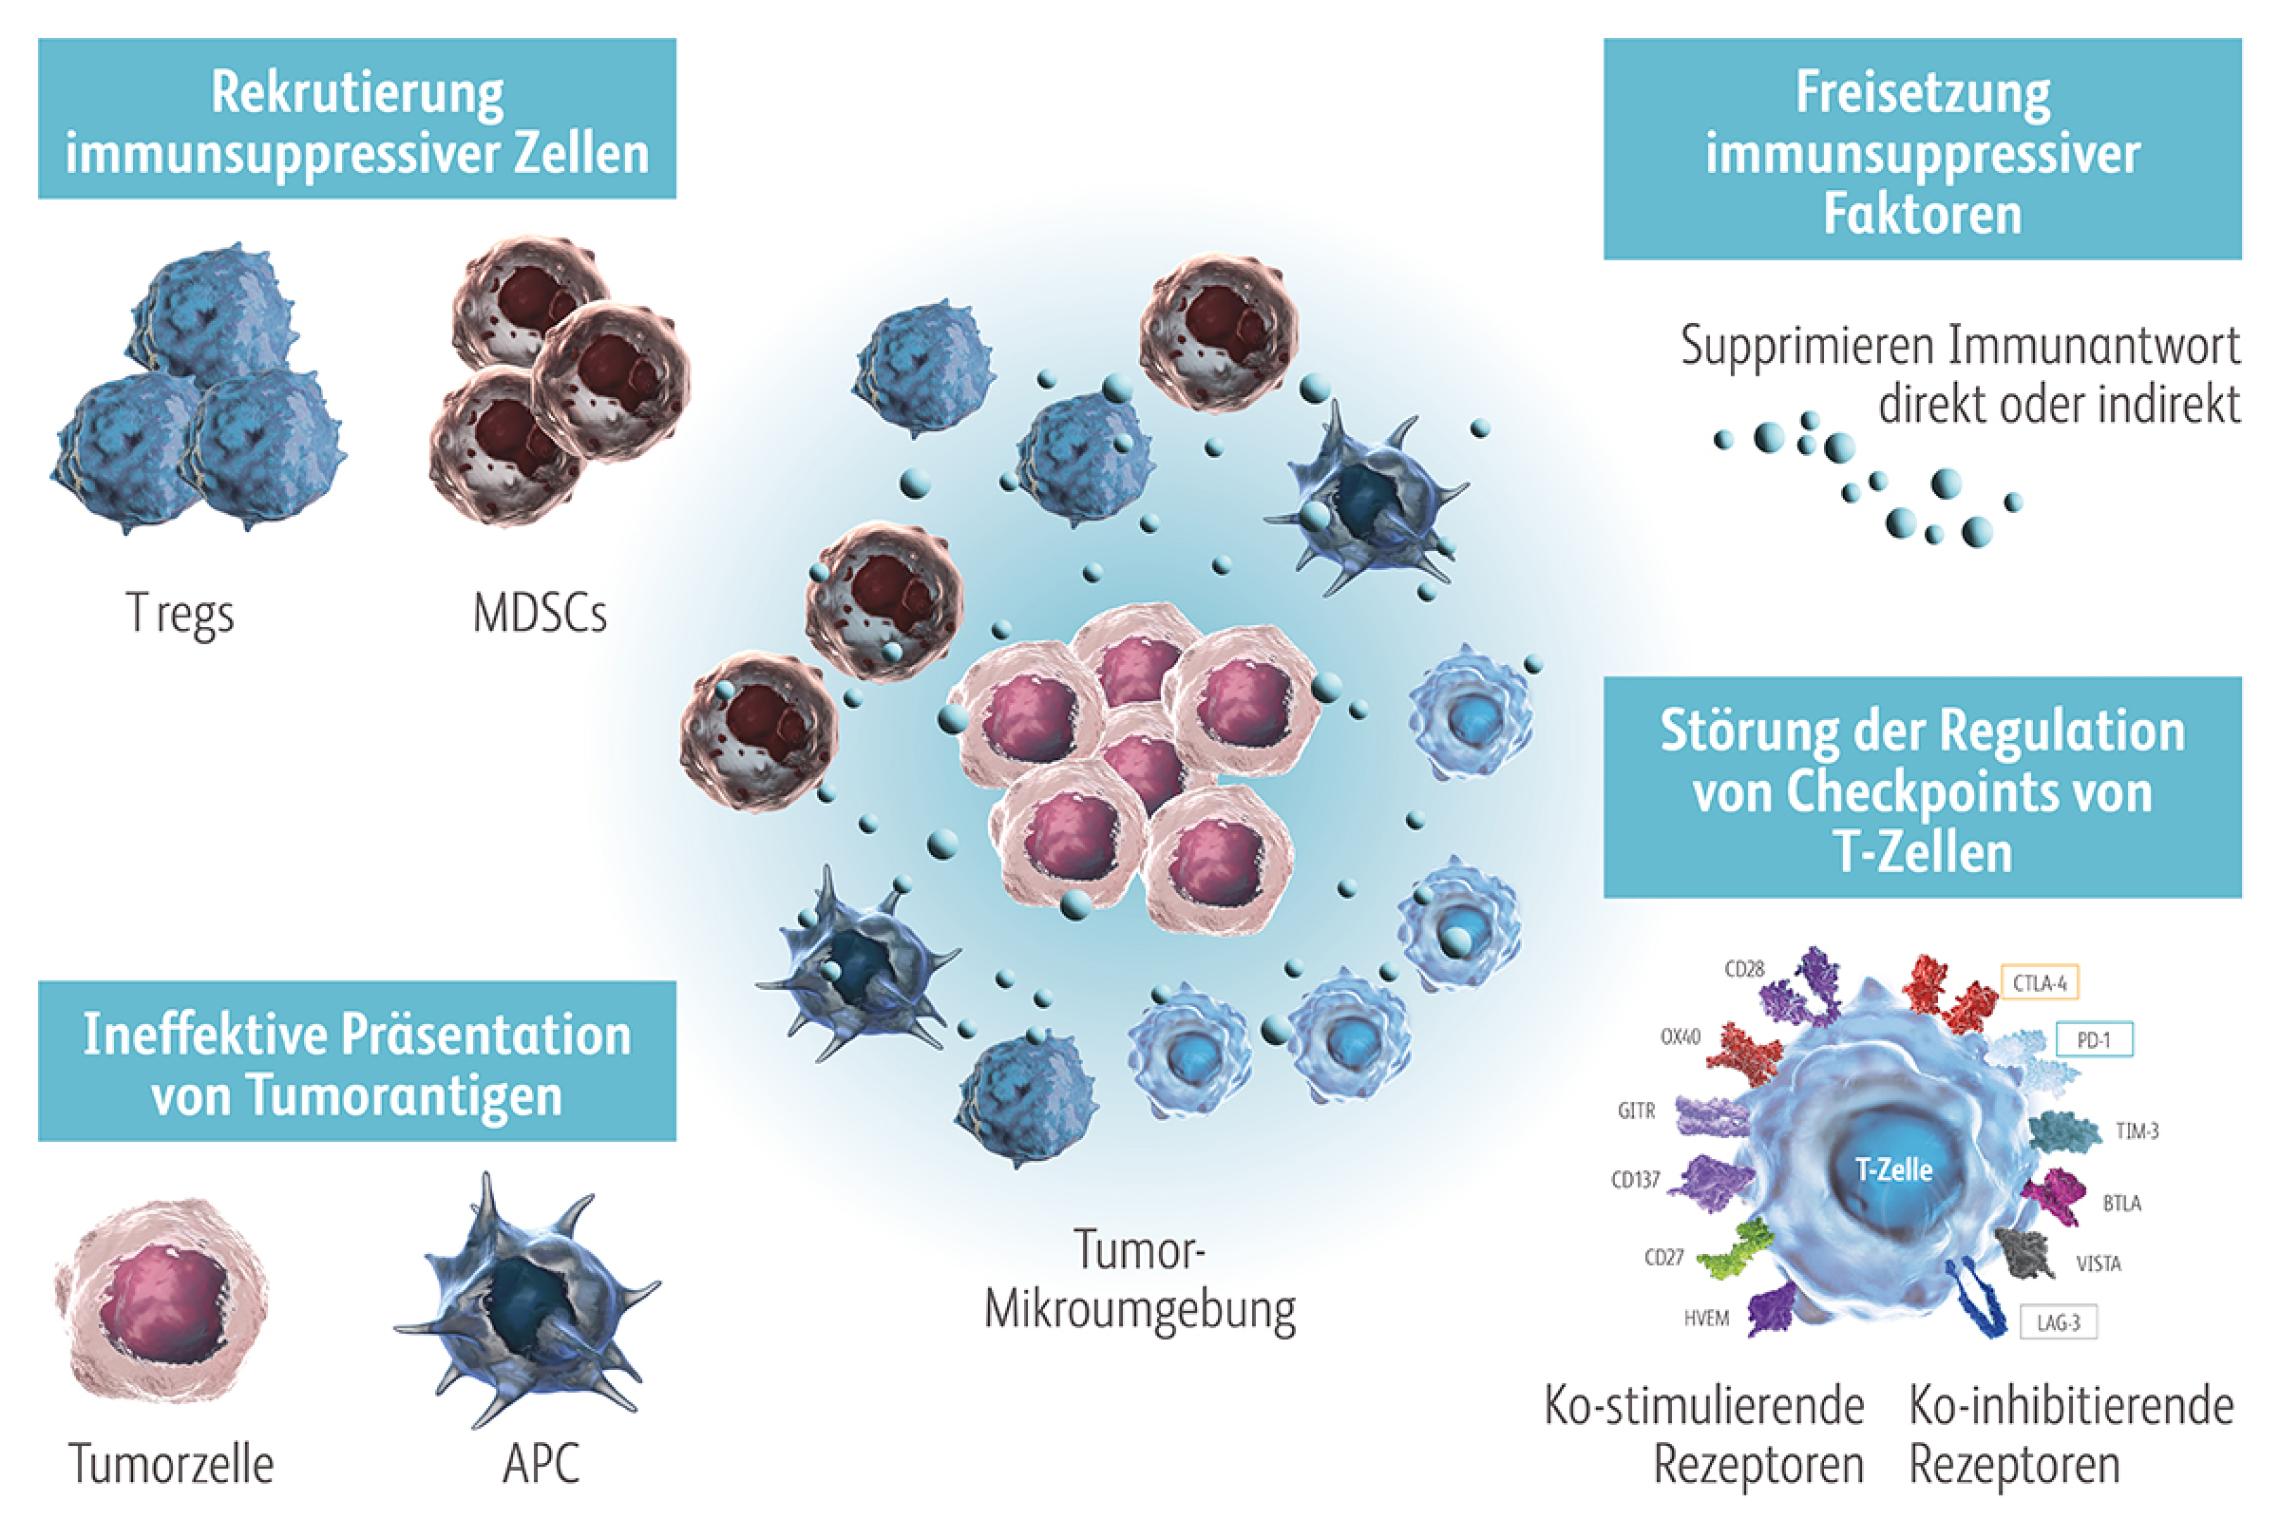 Tumorzellen entgehen der Immunabwehr, indem sie u. a. keine oder nur wenige Tumorantigene bilden, negative kostimulatorische Moleküle exprimieren, die Antigenpräsentation beeinträchtigen und/oder immunsuppressive Zytokine freisetzen bzw. immunsuppressive Zellen rekrutieren.